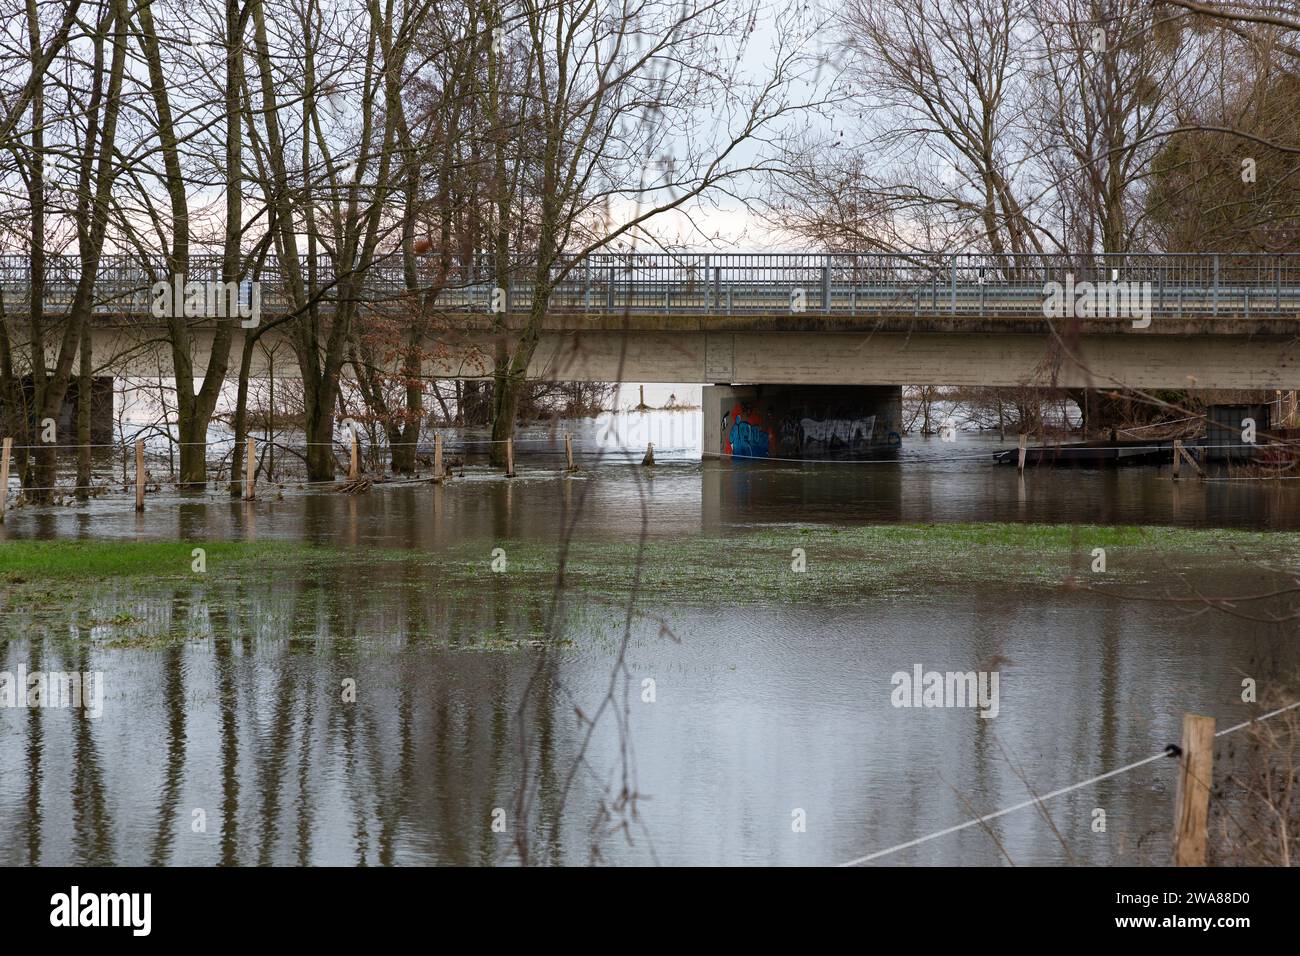 Il fiume Lippe ha fatto irruzione sulle sue sponde. L'acqua alta ha inondato un campo. Gli alberi si riflettono nell'acqua. Foto Stock